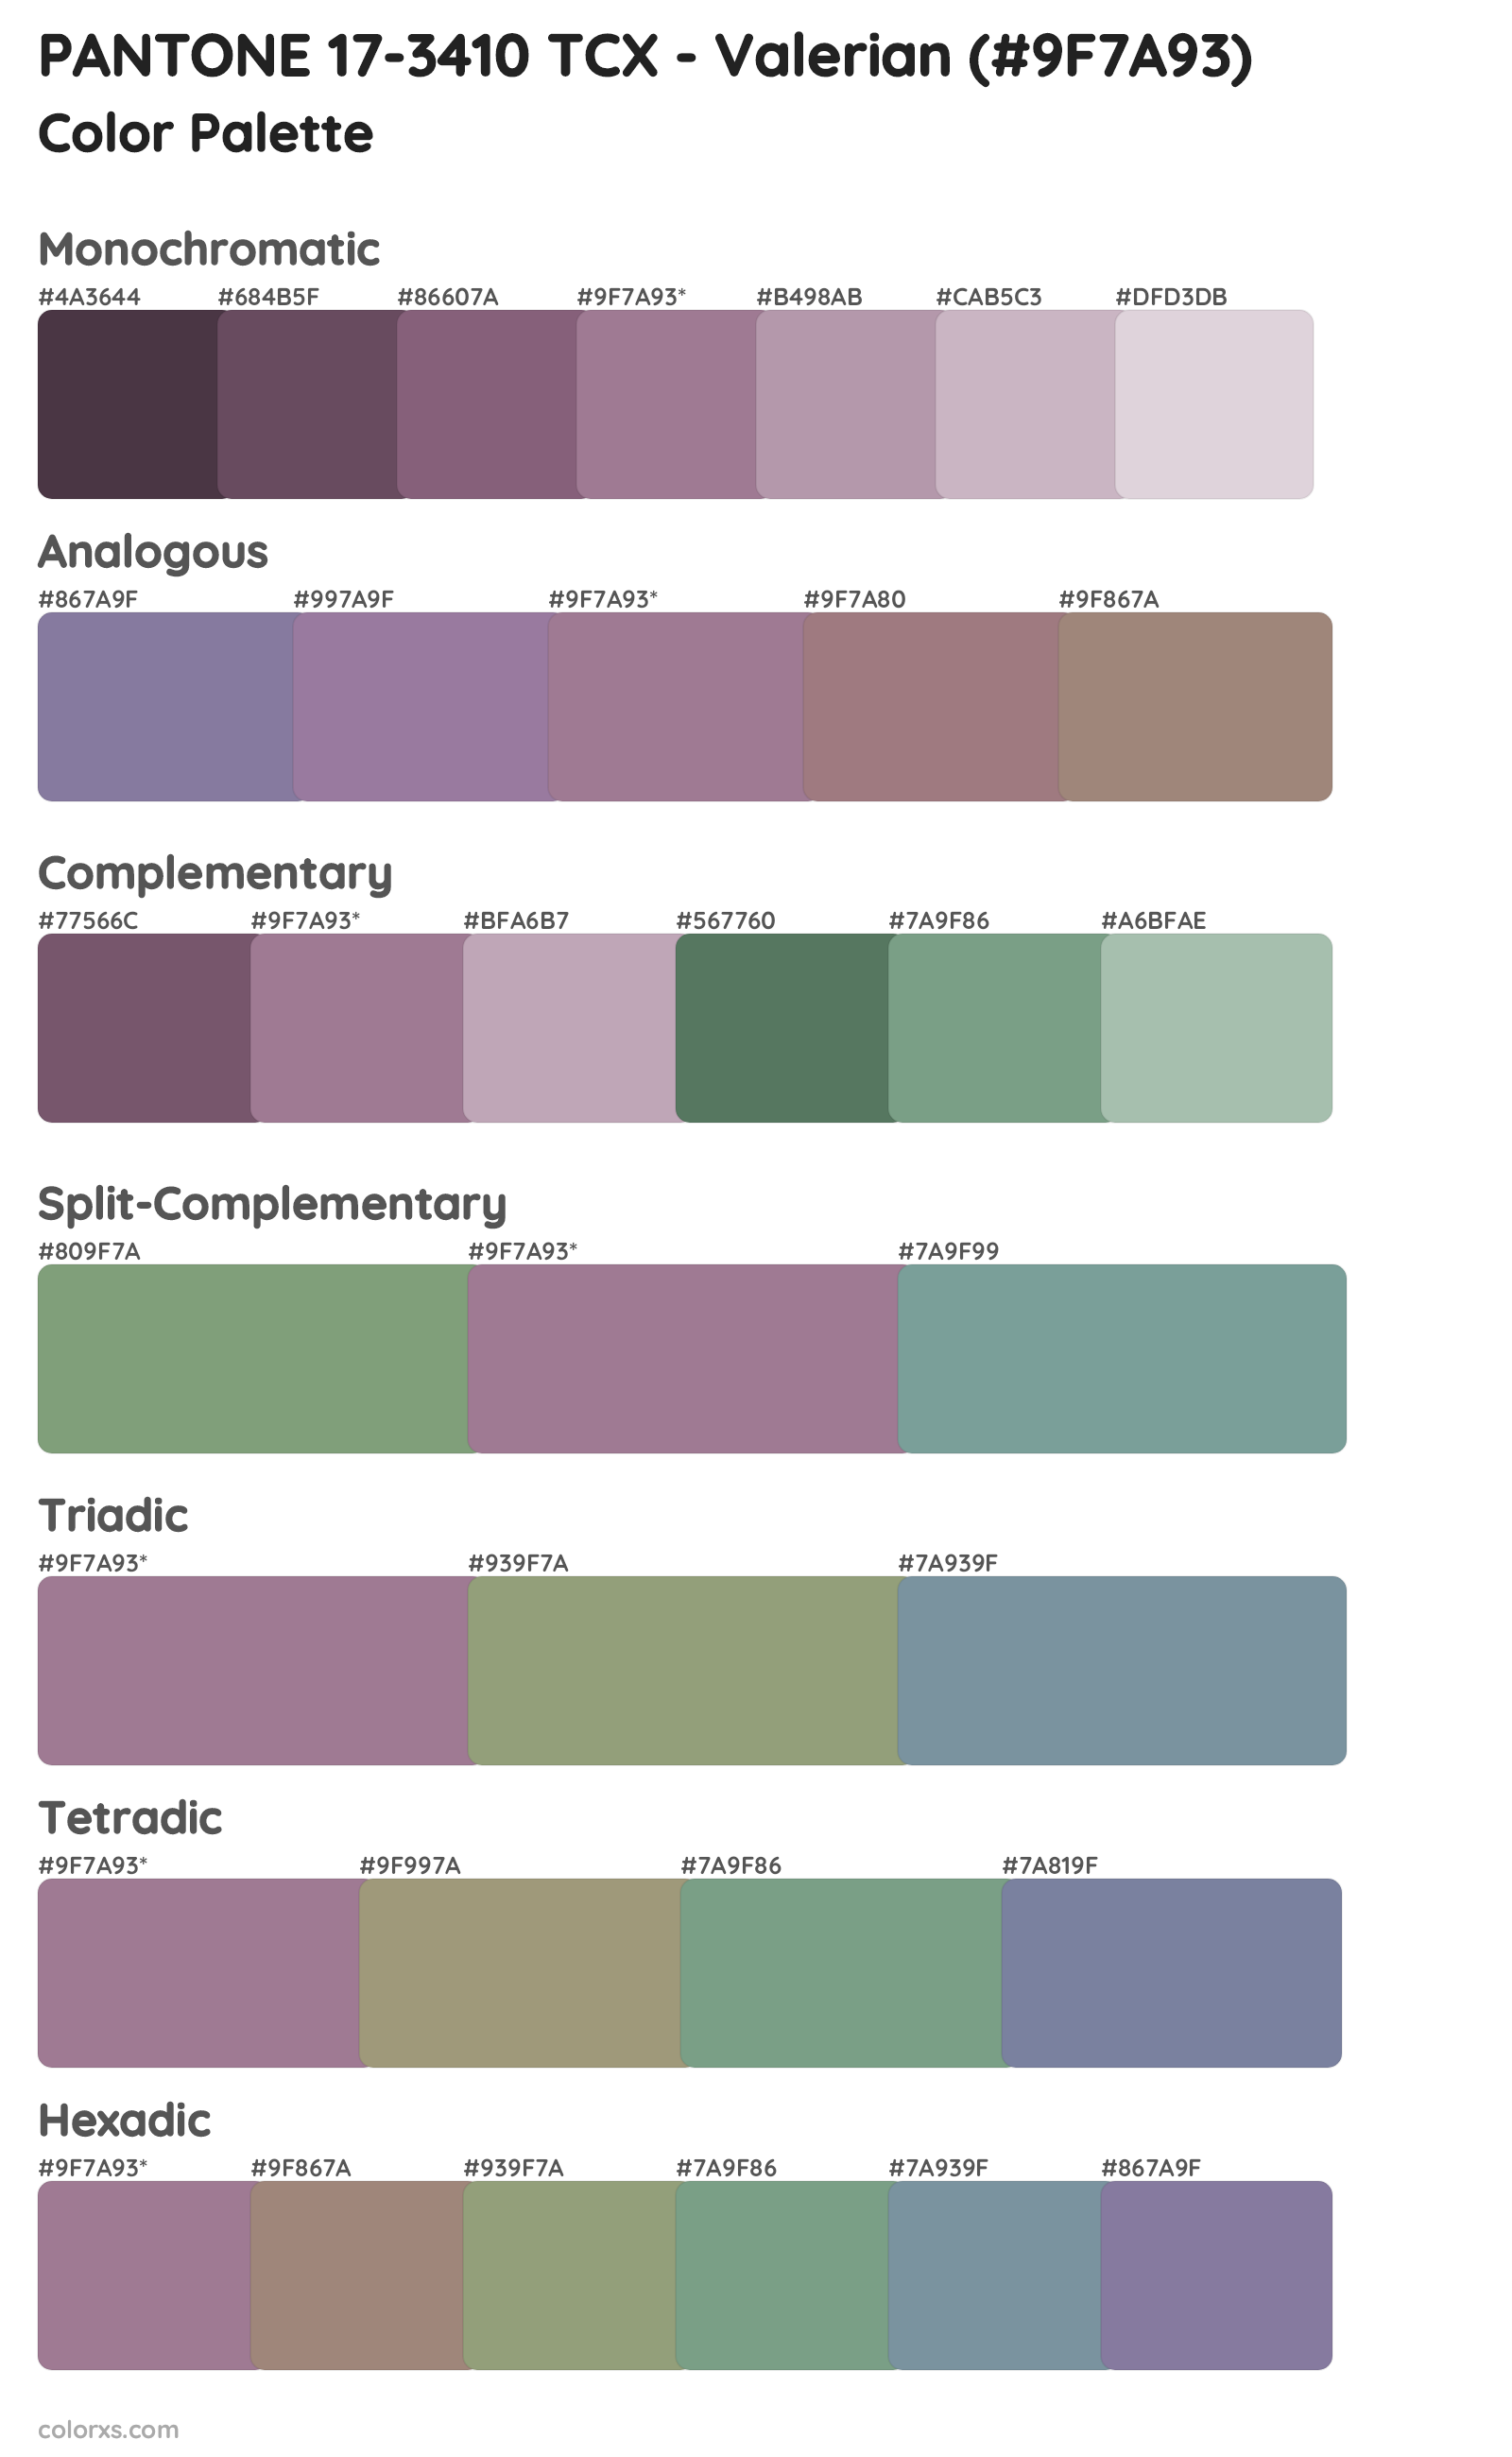 PANTONE 17-3410 TCX - Valerian Color Scheme Palettes